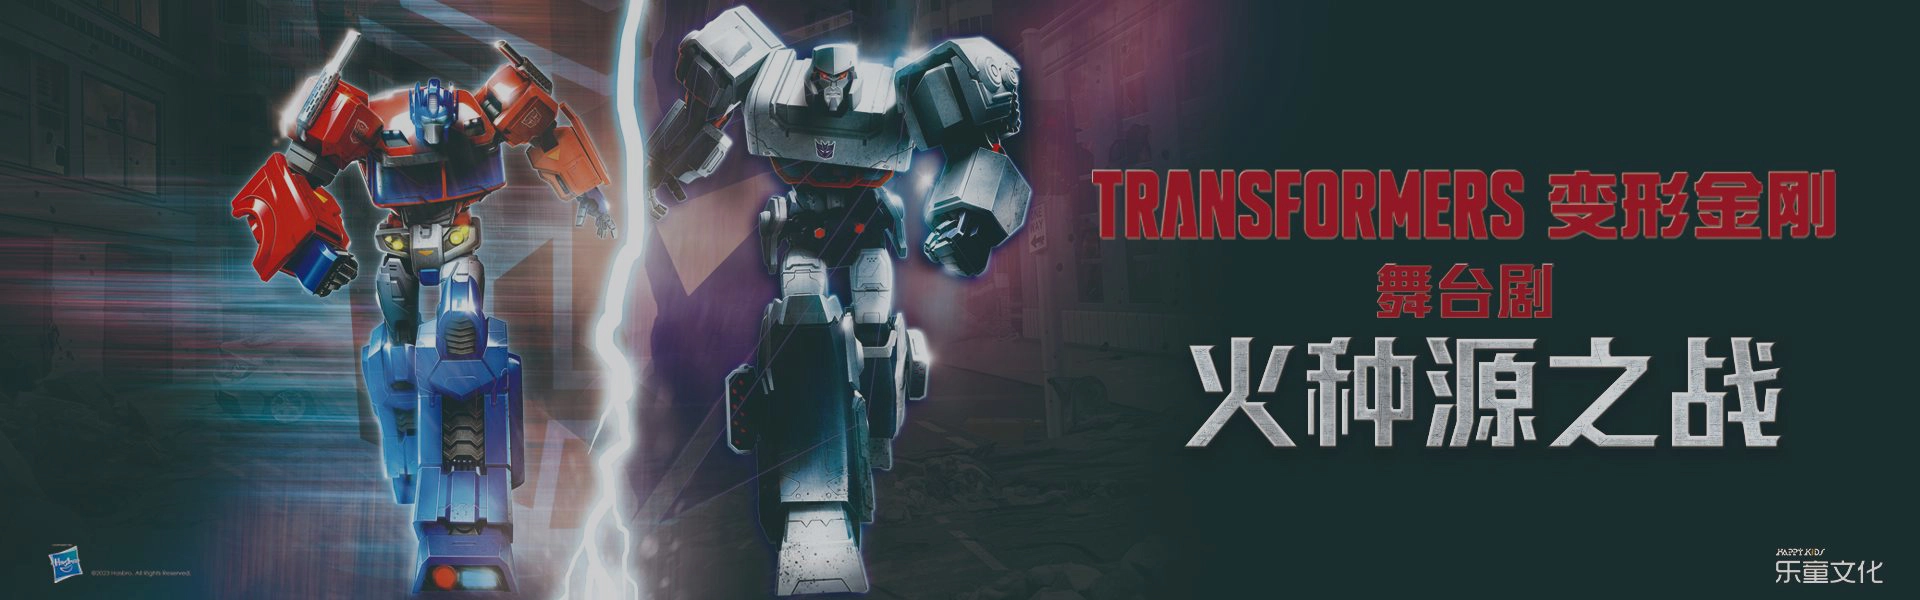 Transformers Live Show